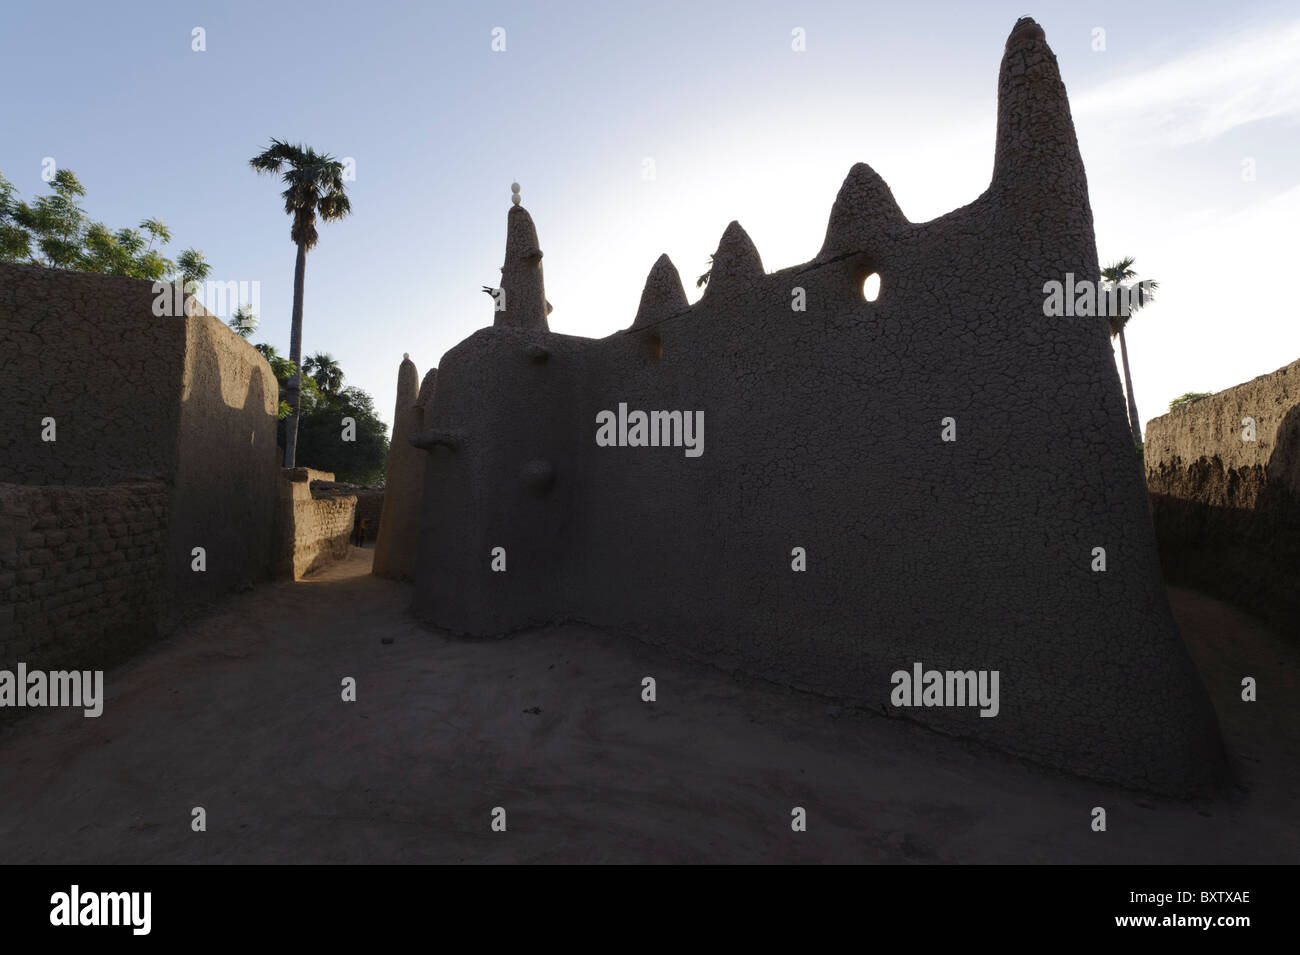 Hintergrundbeleuchtung-Blick auf die kleine Moschee in einem Peul-Dorf in der Nähe von Djenné, Mali. Stockfoto